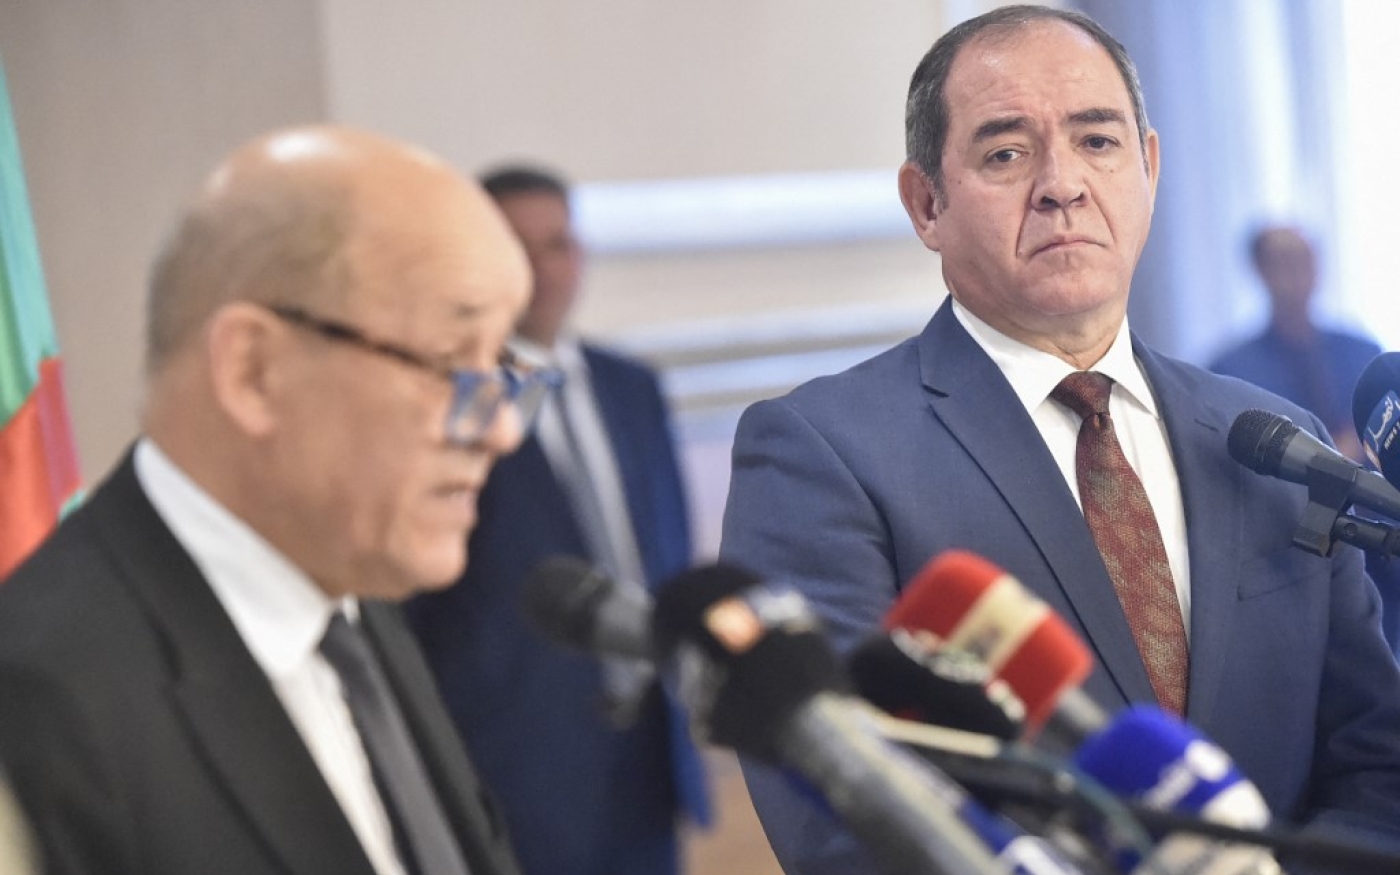 Le ministre algérien des Affaires étrangères Sabri Boukadoum écoute son homologue français, Jean-Yves Le Drian, lors d’une conférence de presse le 21 janvier 2020 (AFP)